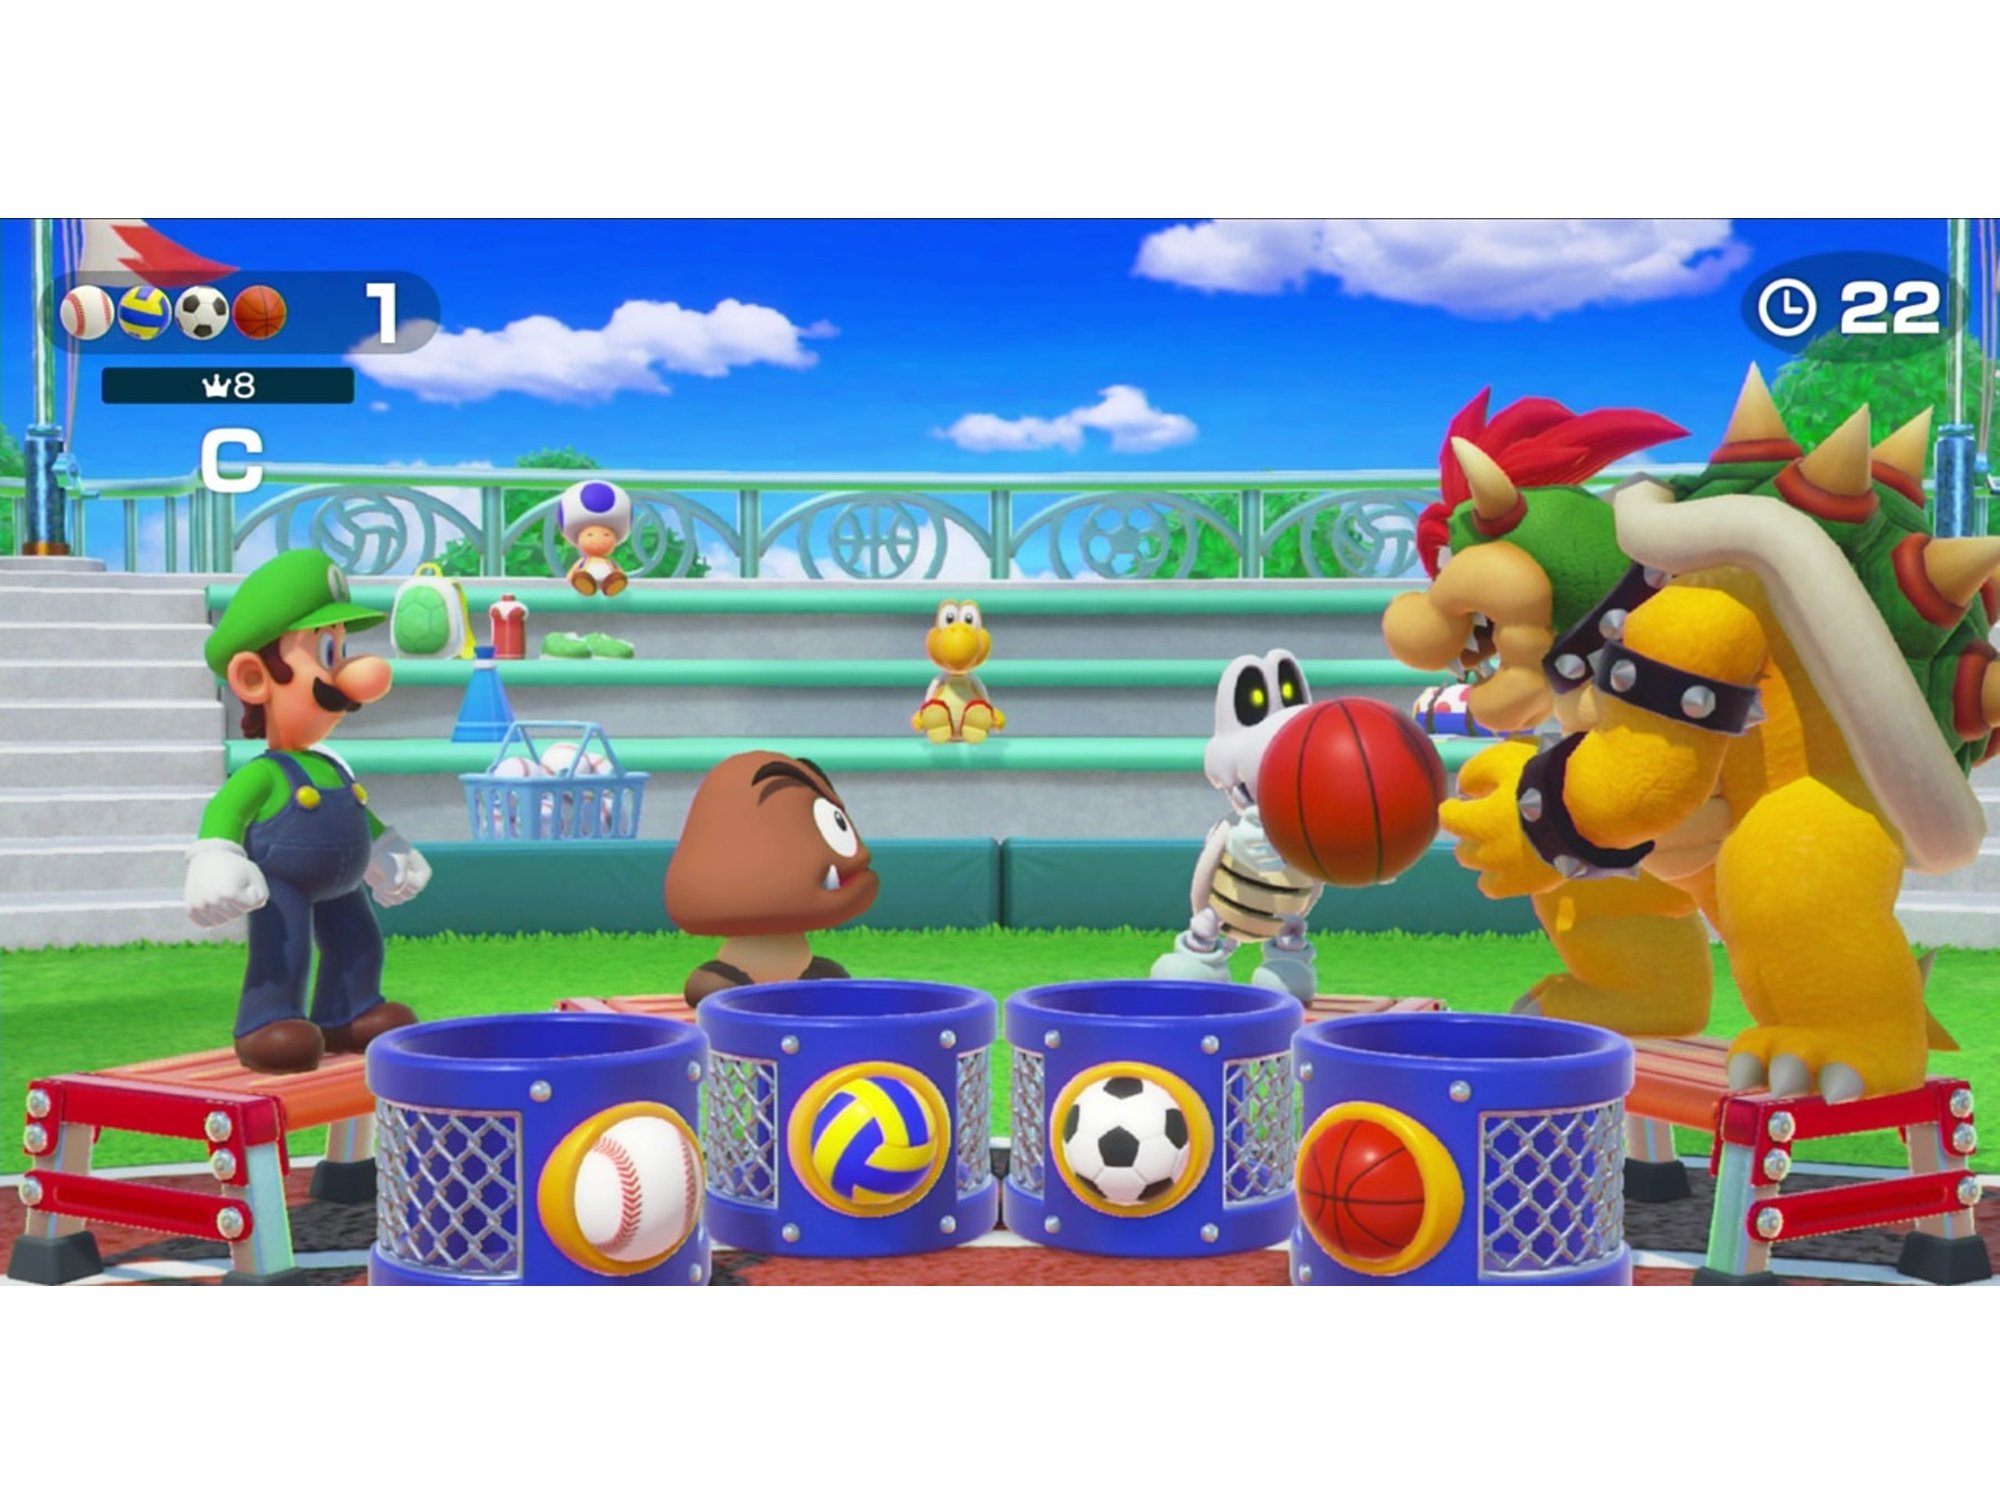 Juego Nintendo Switch Super Mario Party